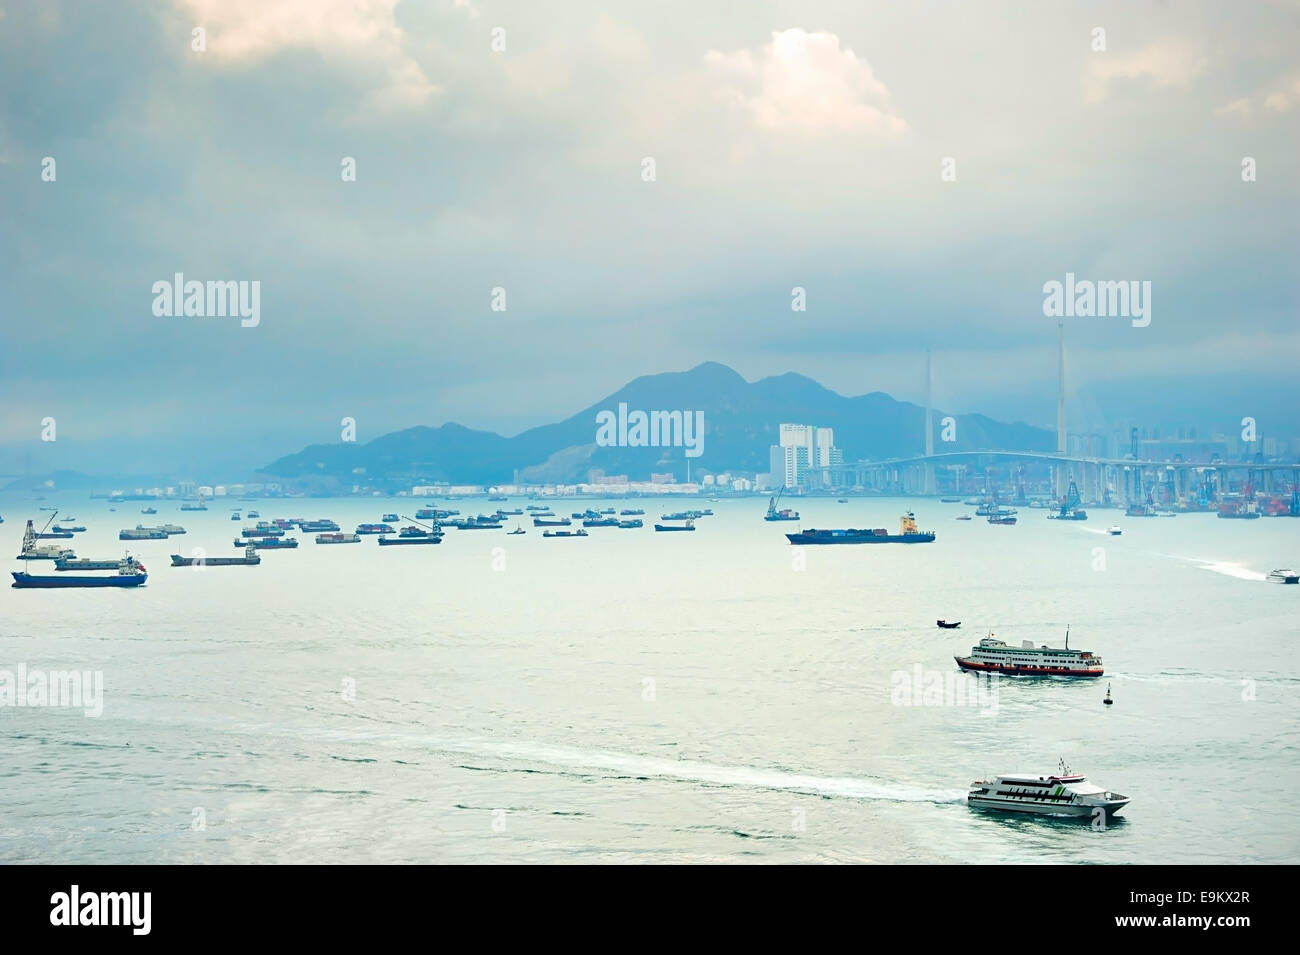 La baie de Hong Kong avec beaucoup de navires. Pont de Tsing Ma sur la droite. Banque D'Images